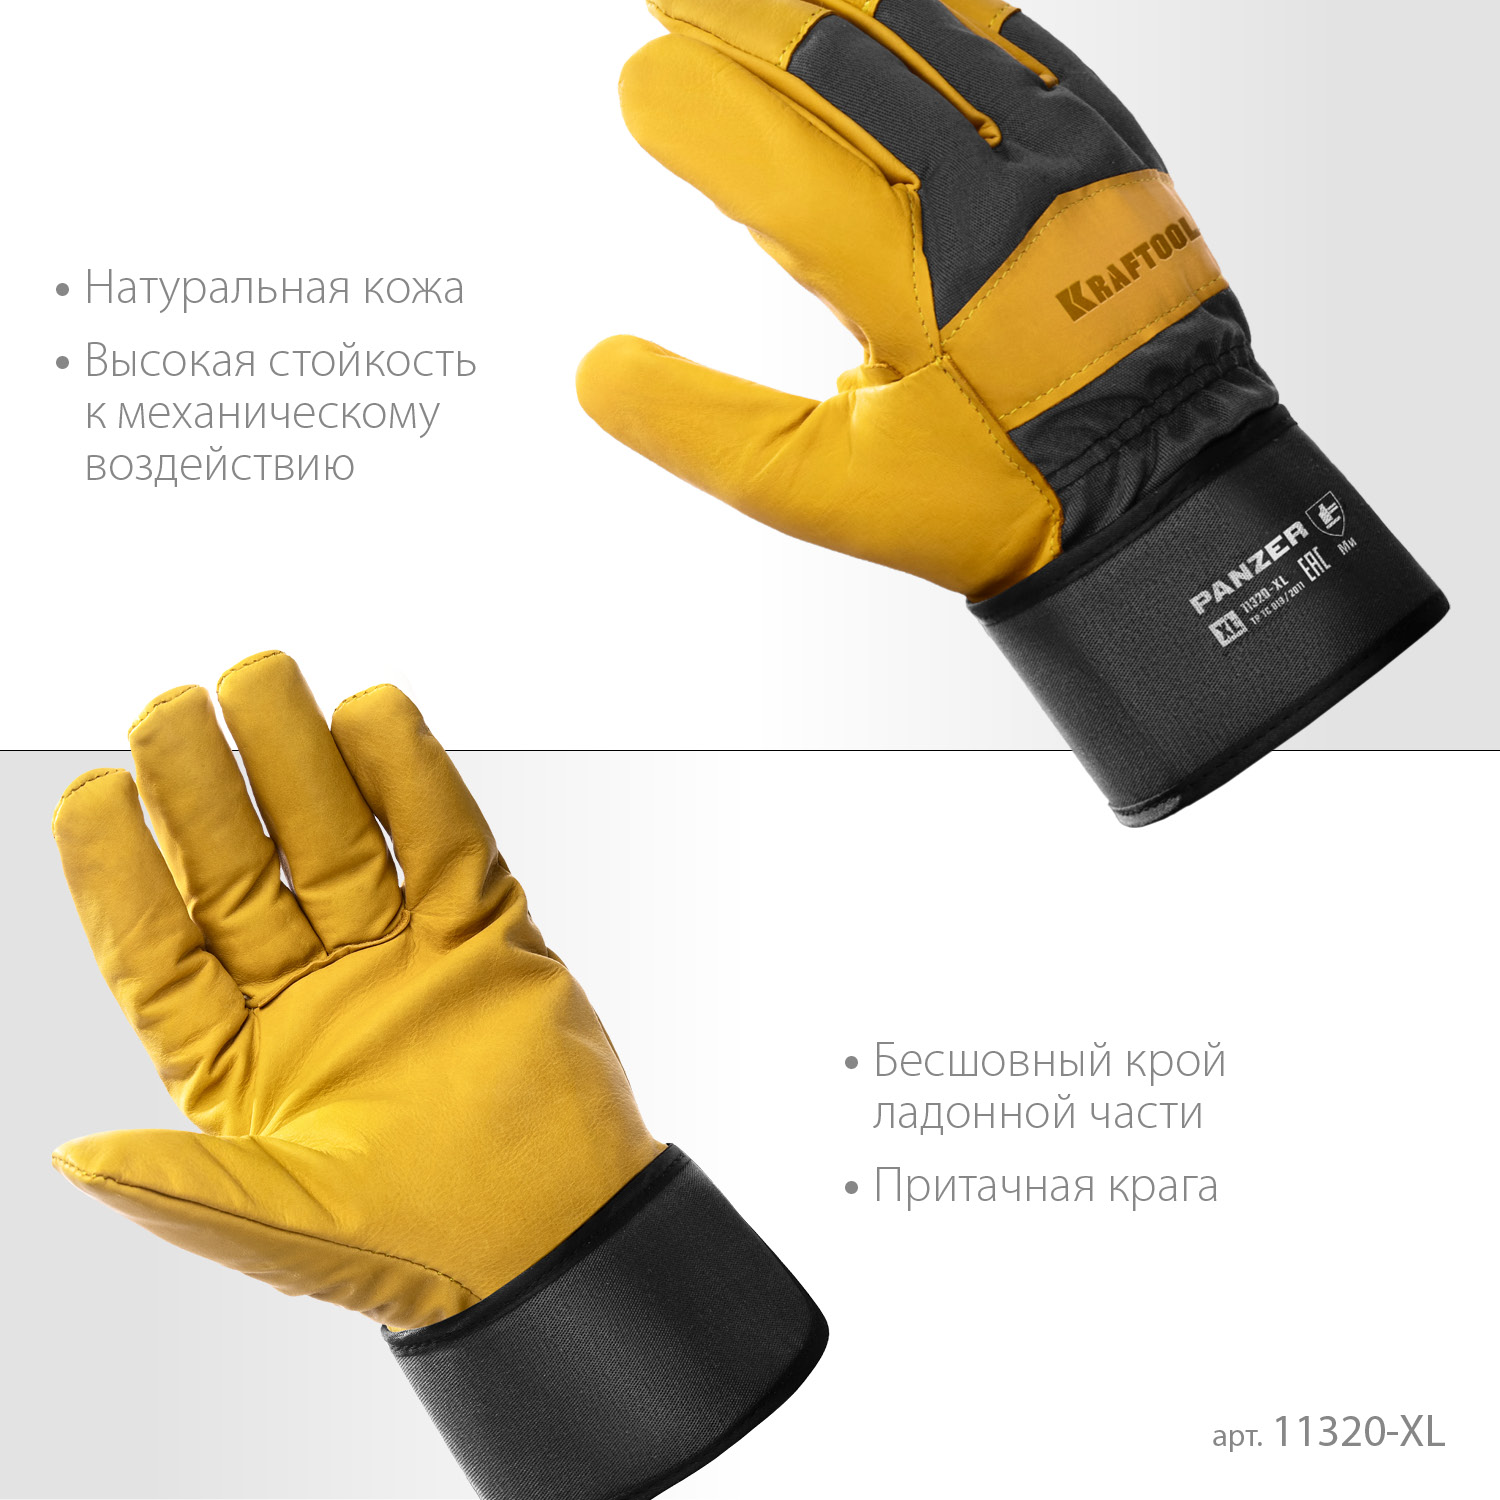 KRAFTOOL PANZER, XL, от мех. воздействий, комбинированные, кожаные перчатки (11320-XL)